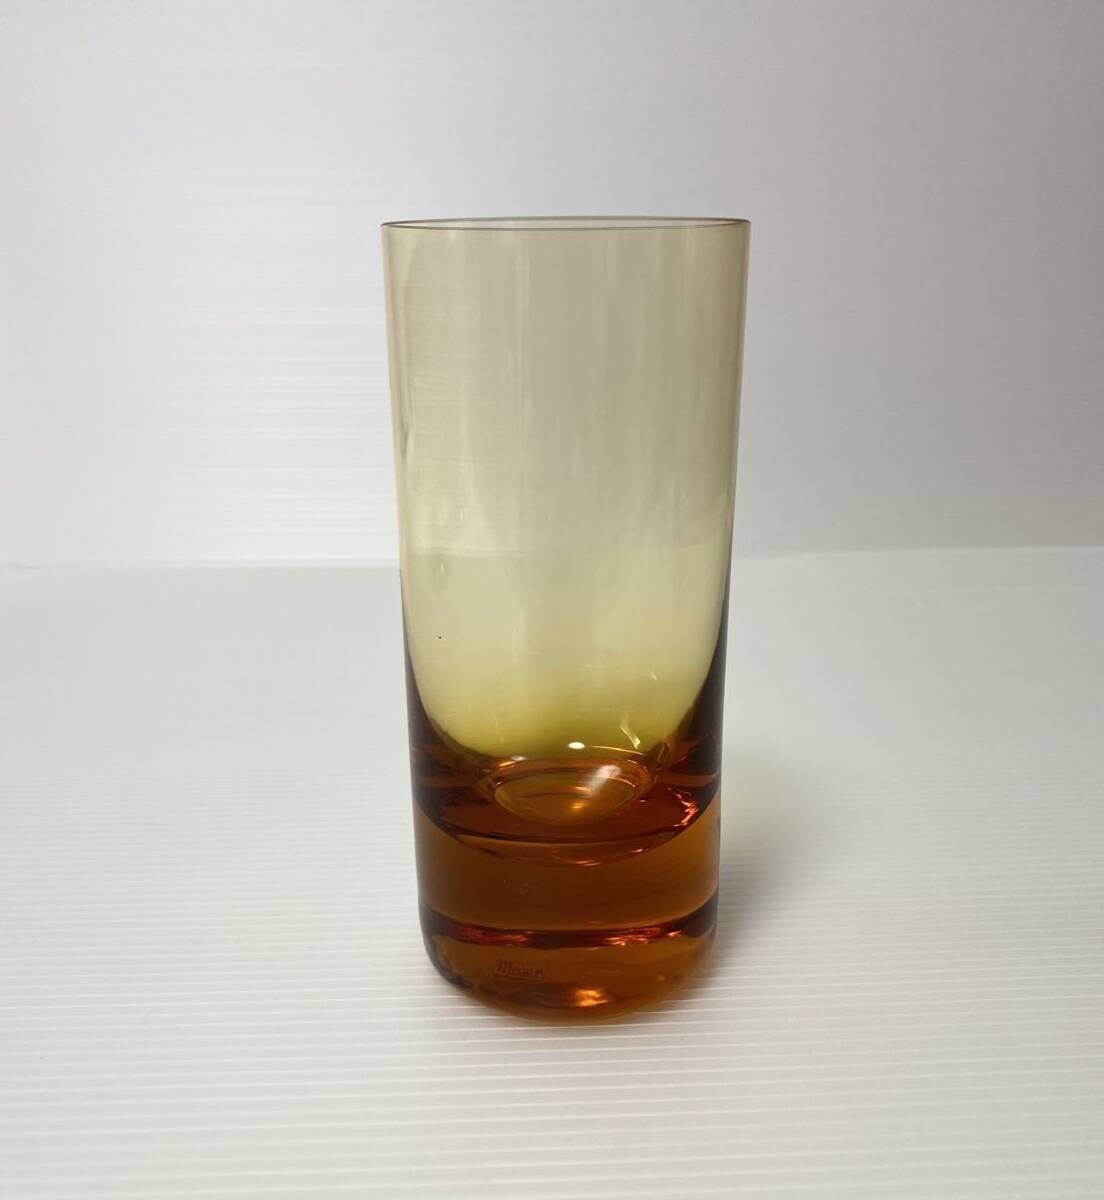  Mauser MOSER стакан crystal высокий стакан Чехия 210ml градация 